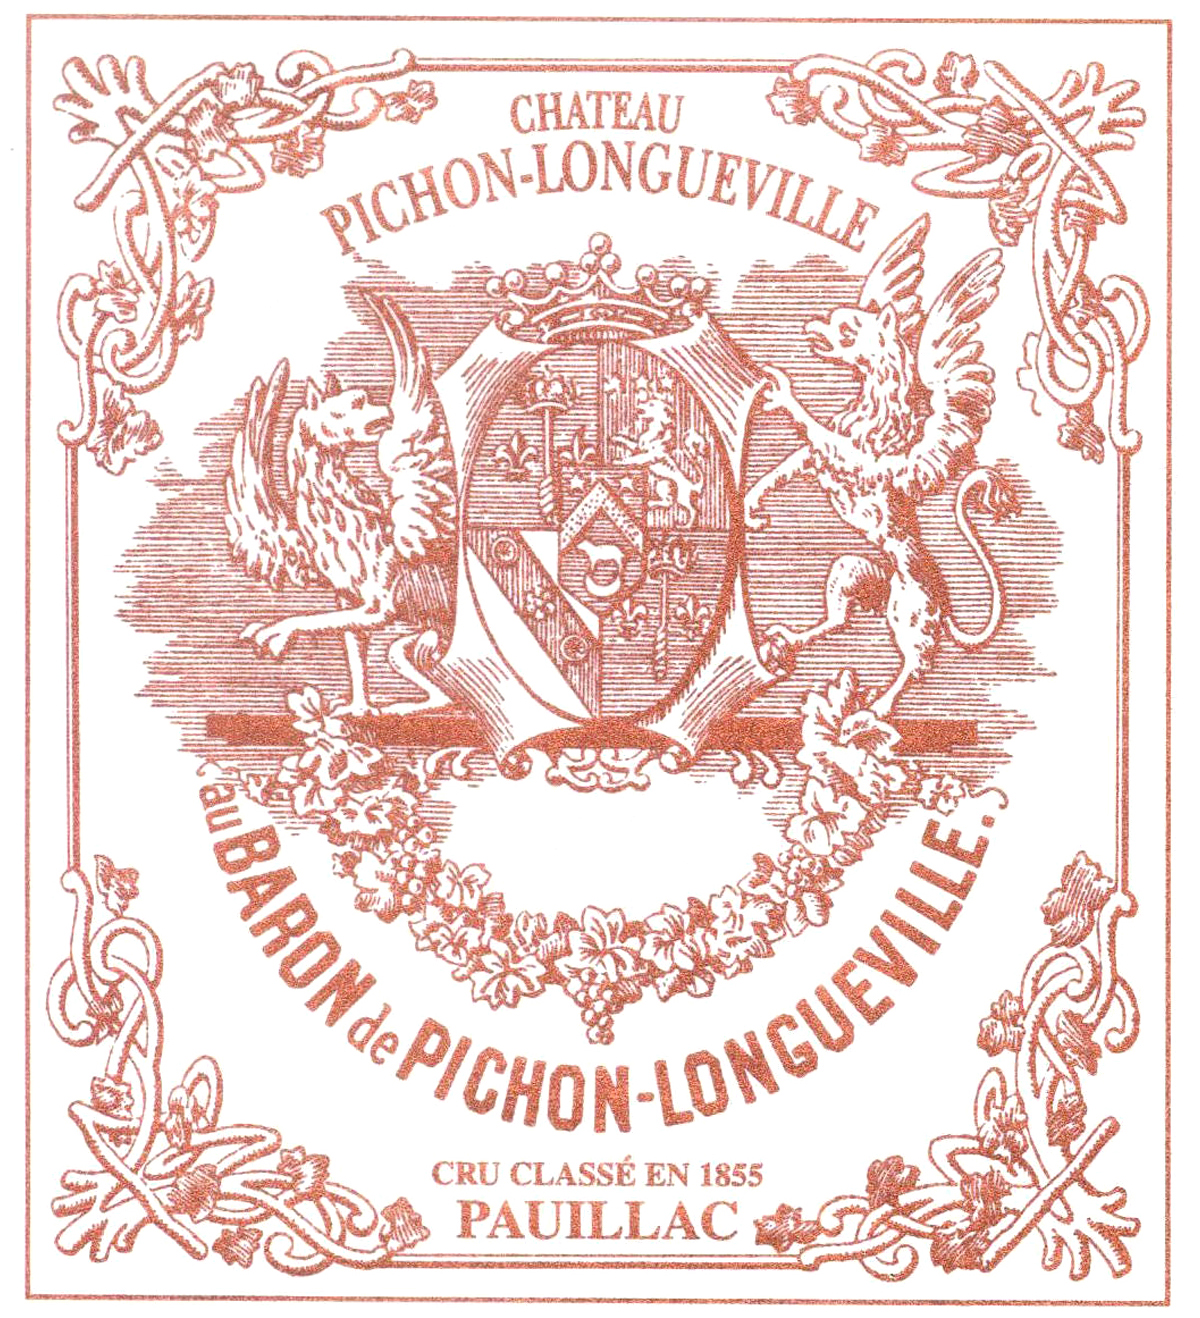 Pichon Baron, Bordeaux, Pauillac, France, AOC, 2eme Cru Classe